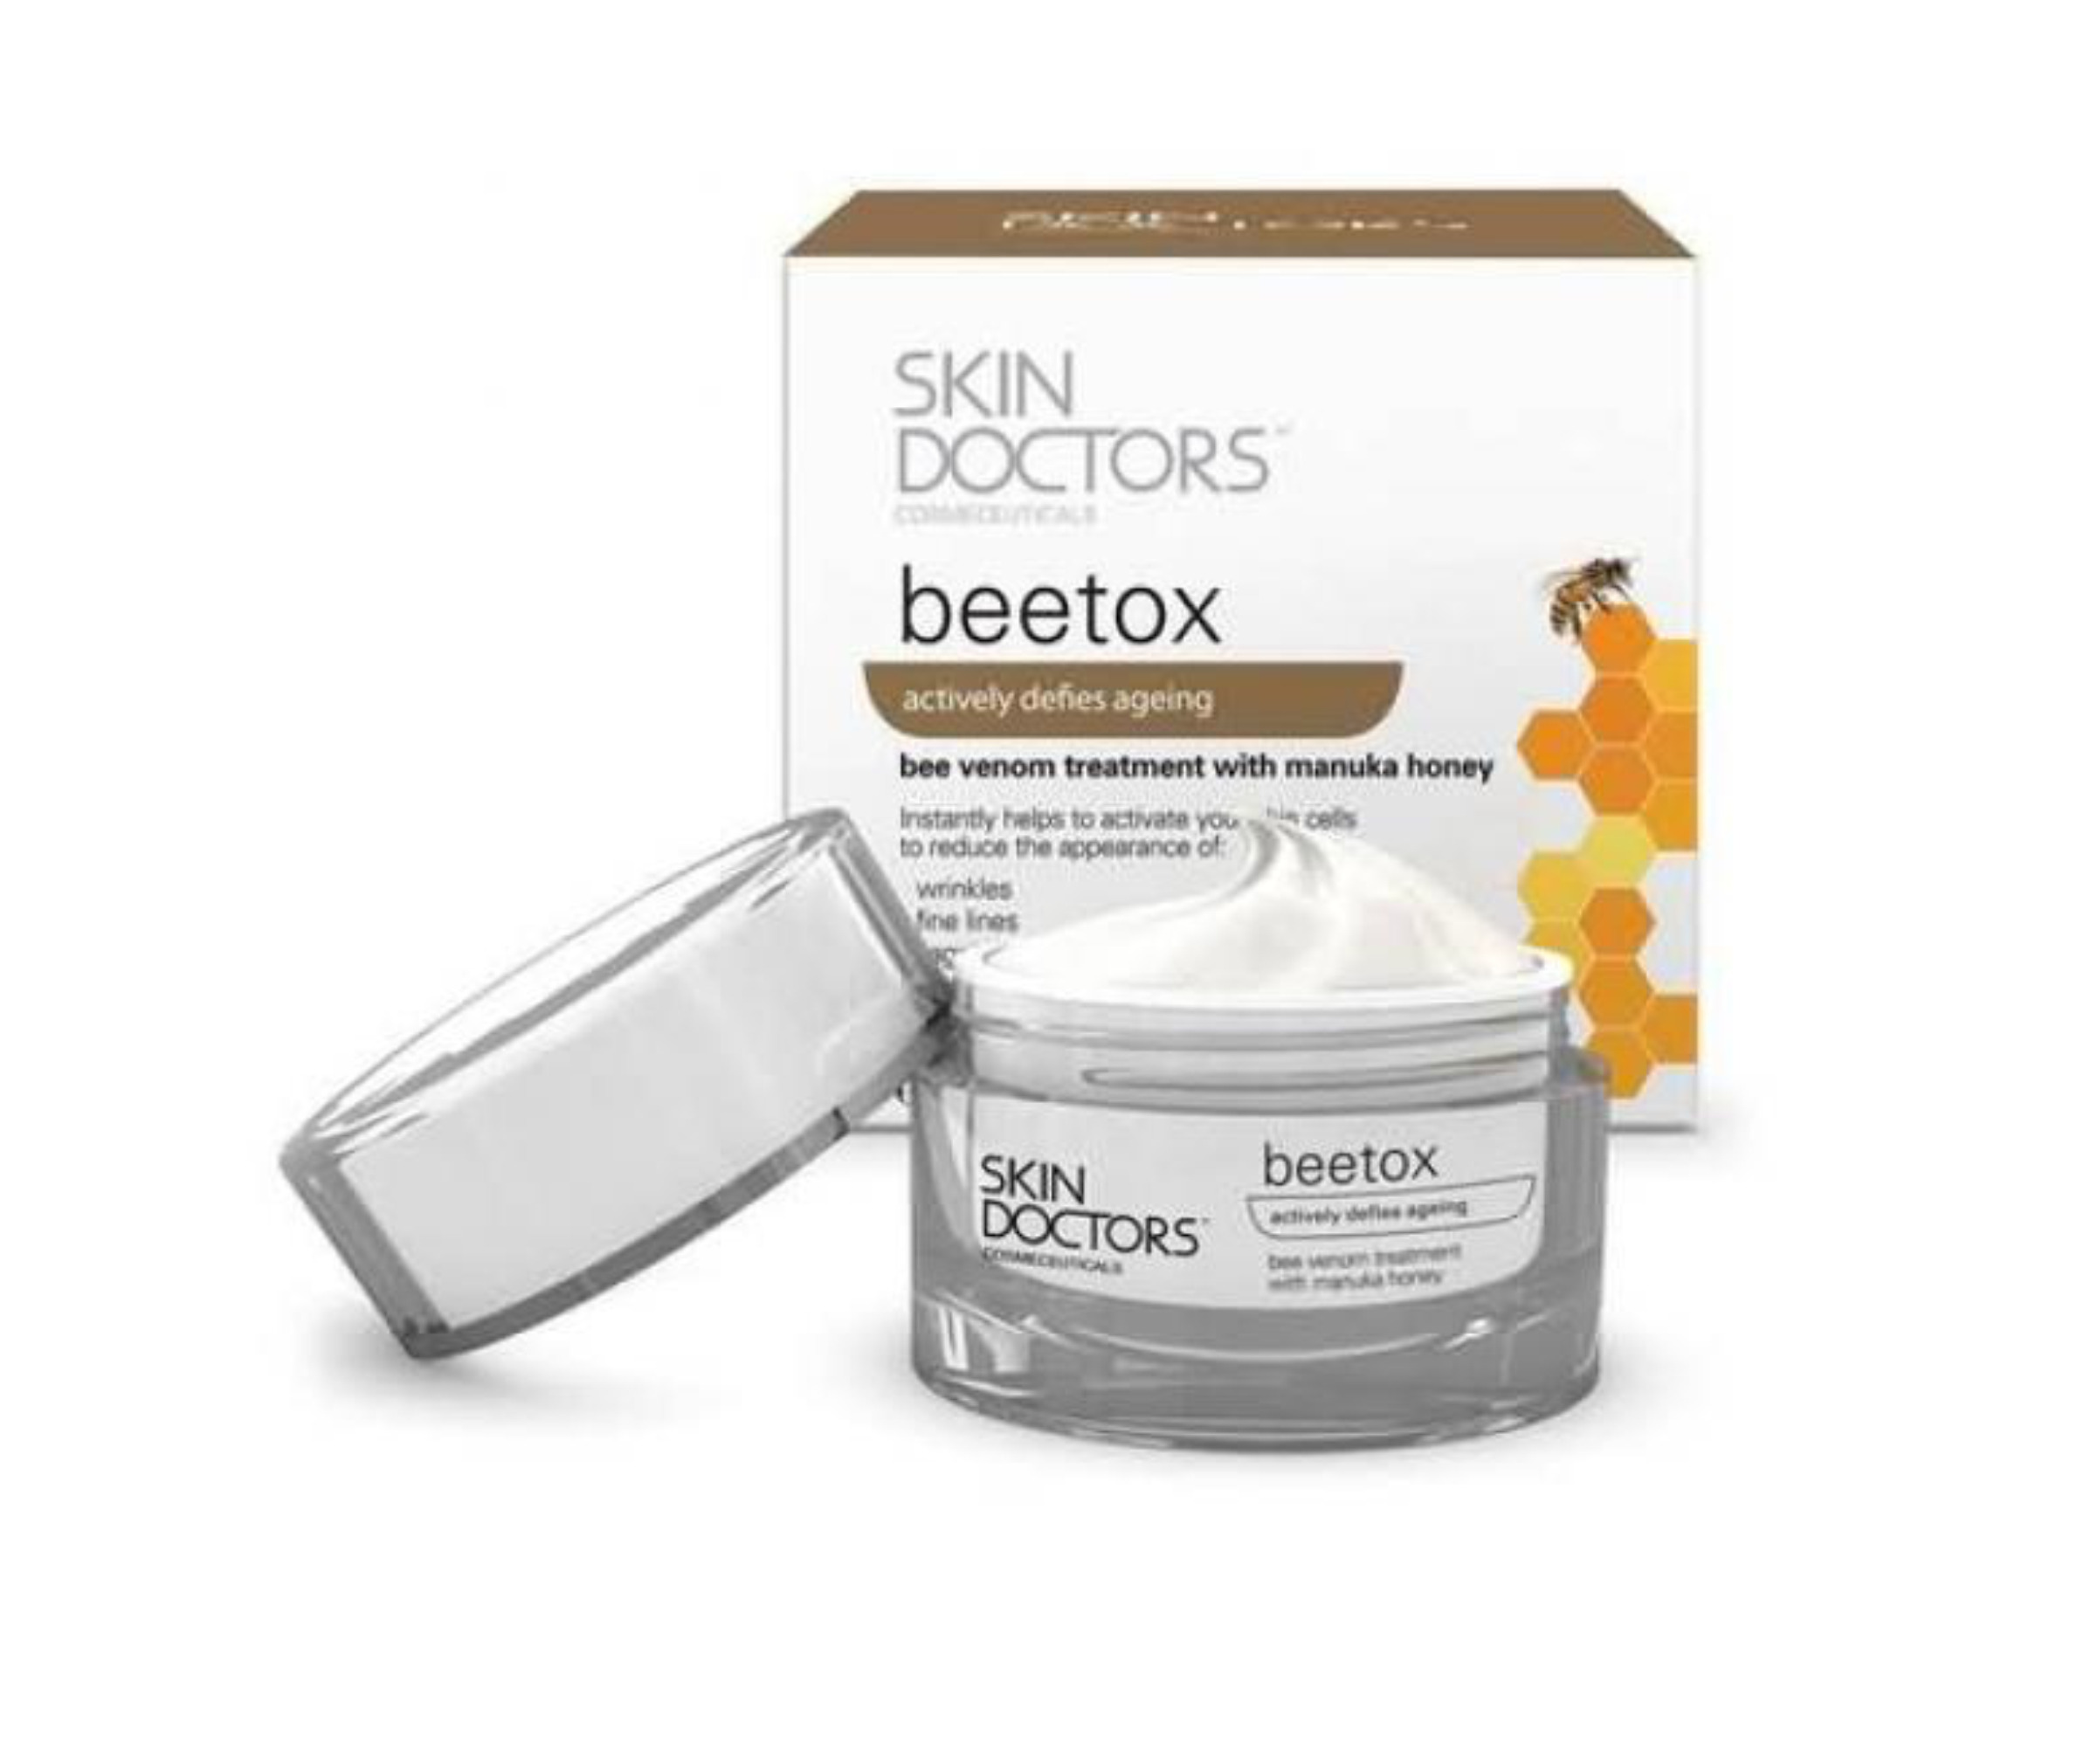 Kem chống lão hóa Skin Doctors Beetox